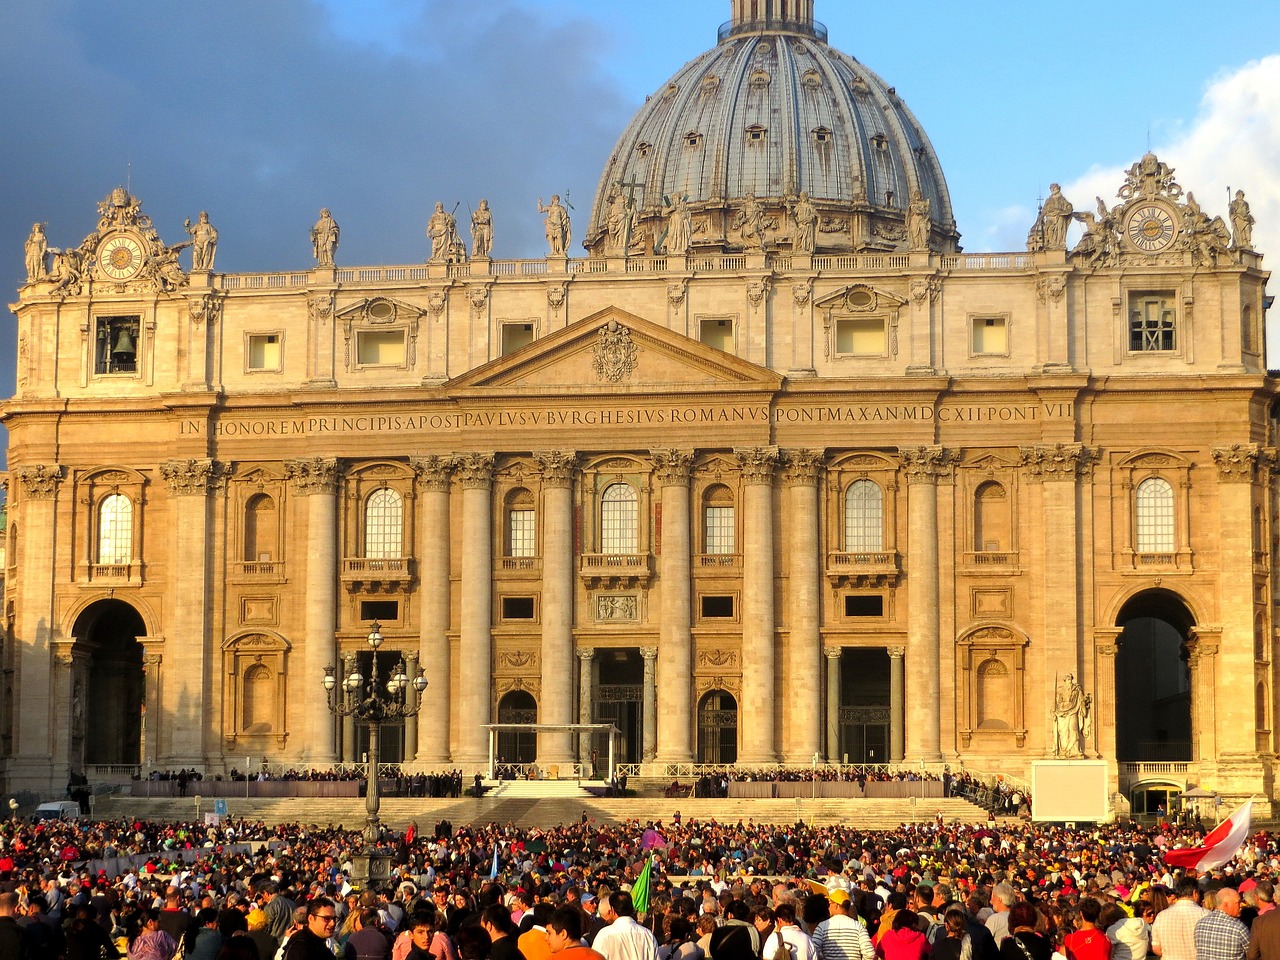 Praça de São Pedro, Vaticano. Créditos: Pixabay